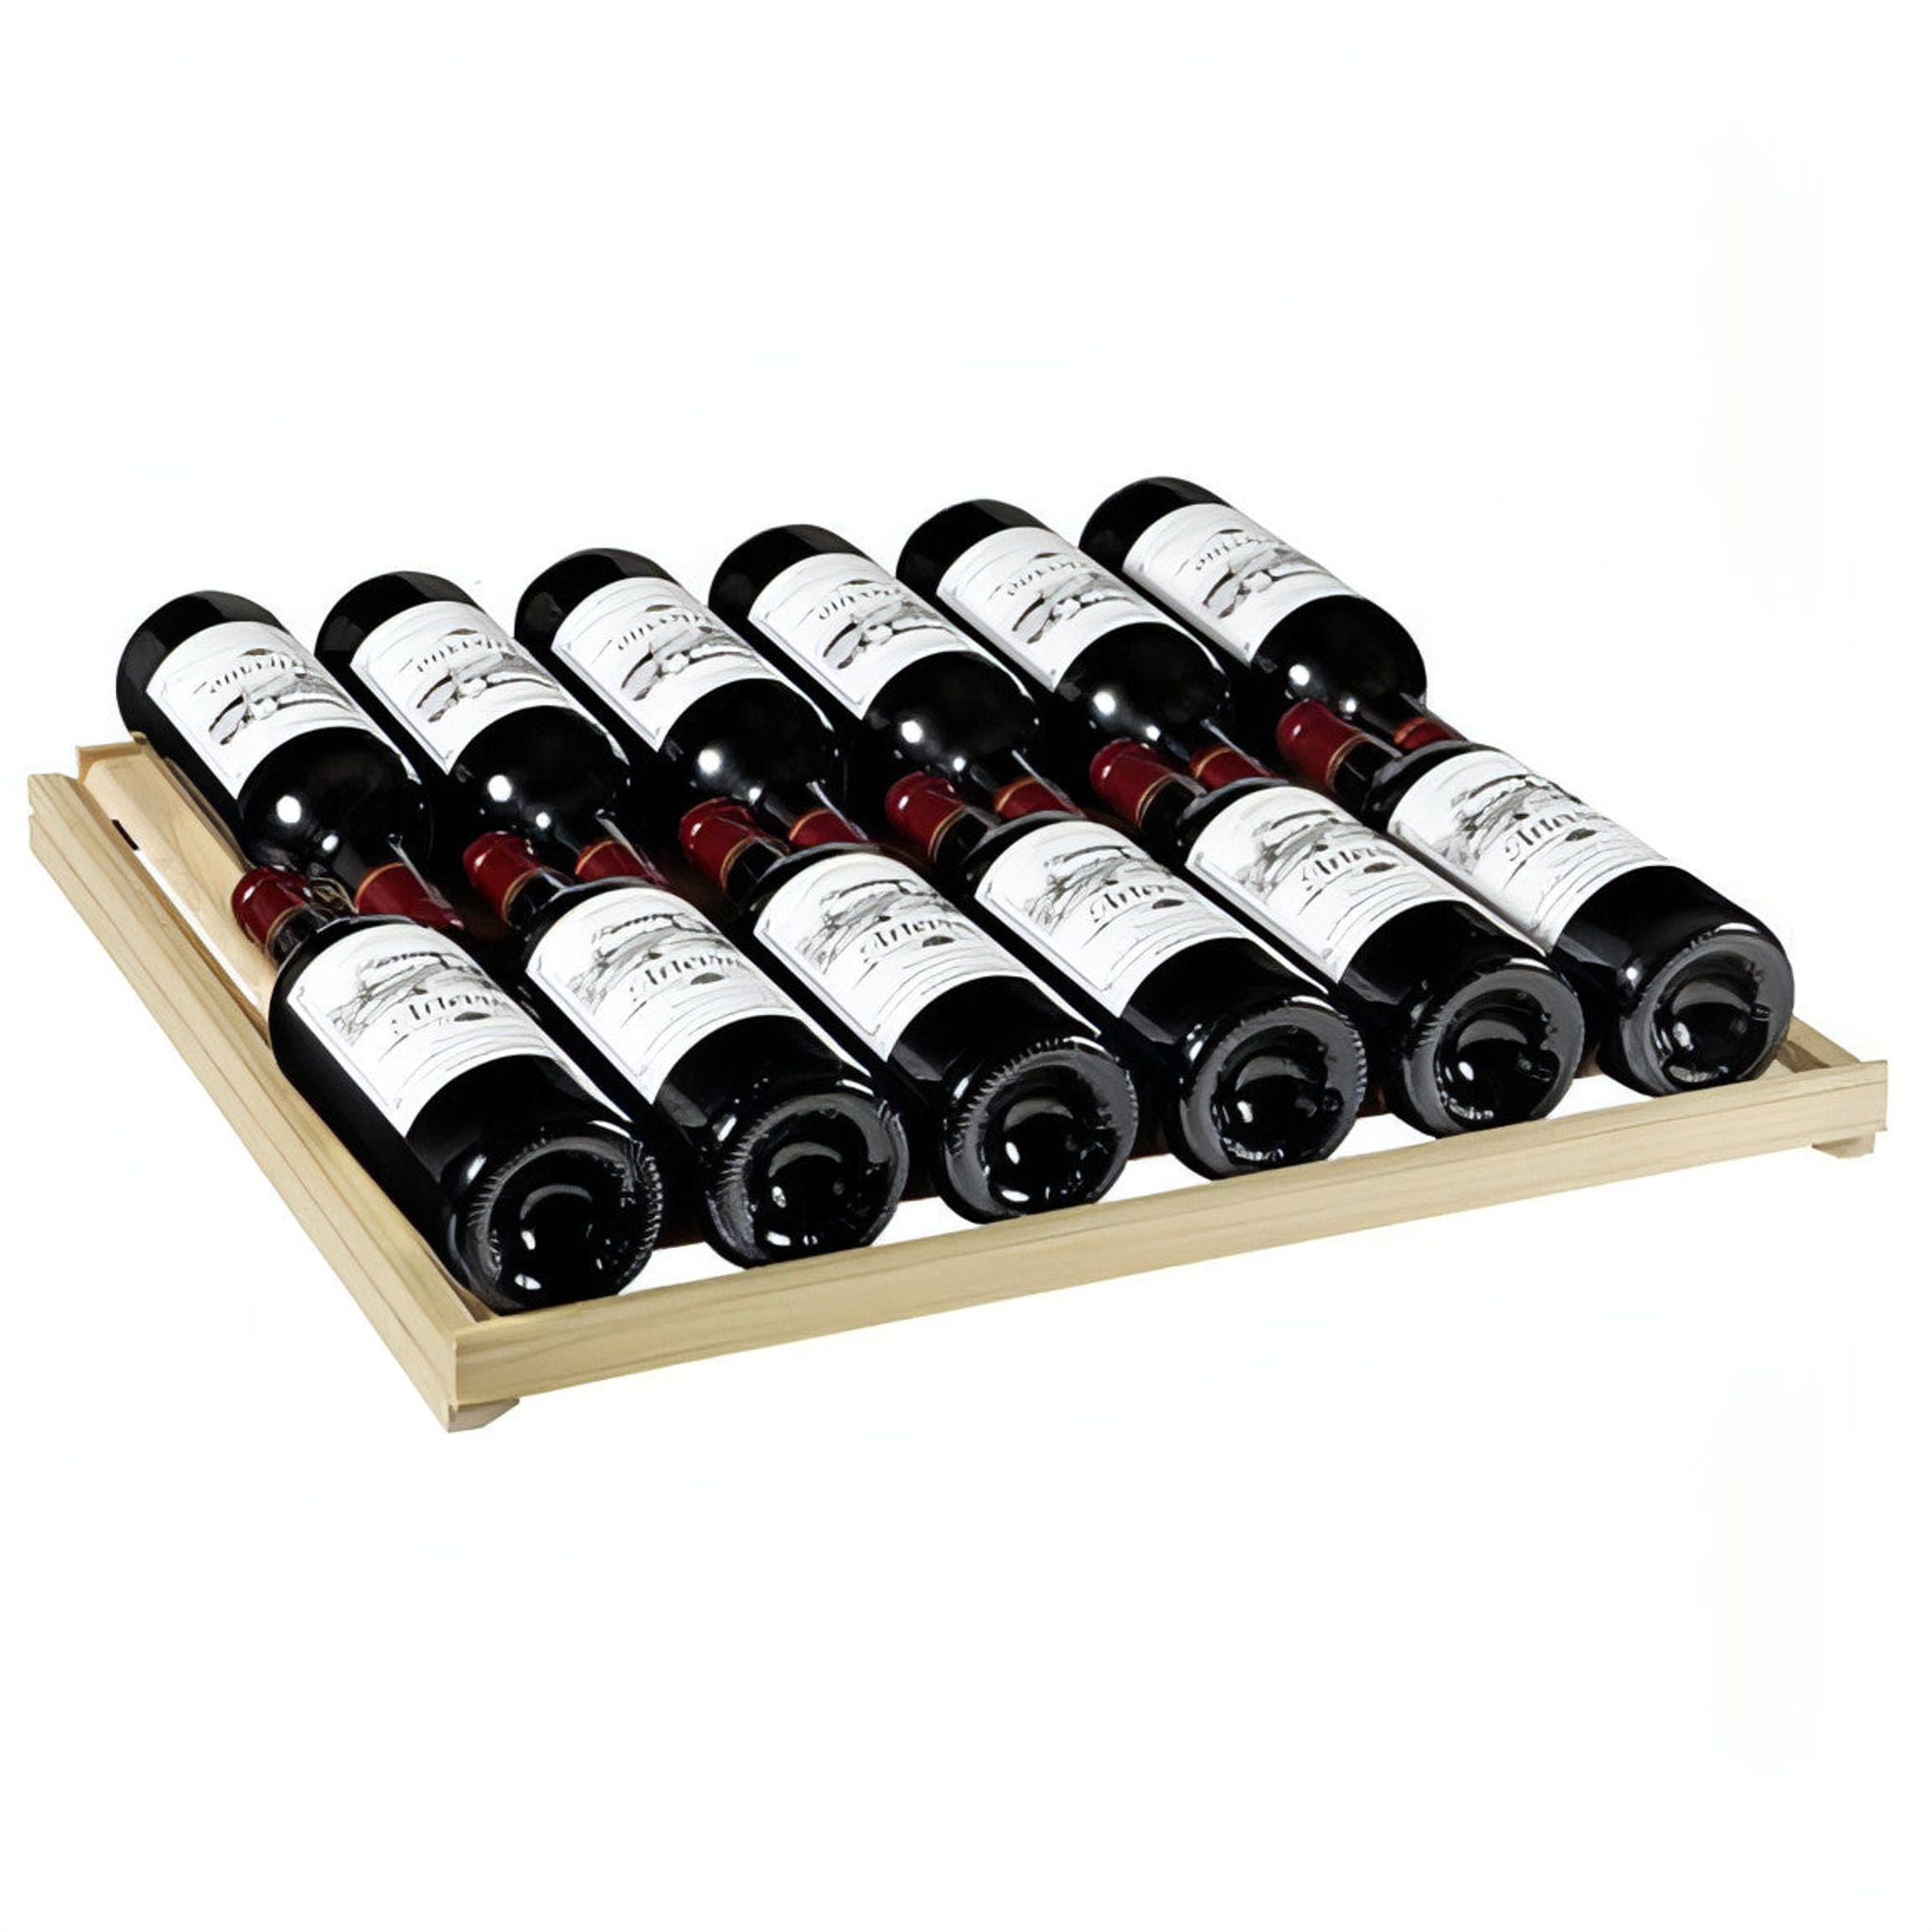 Artevino Oxygen - 98 Bottle Single Zone Wine Cabinet OXP1T98NVSD - Silver